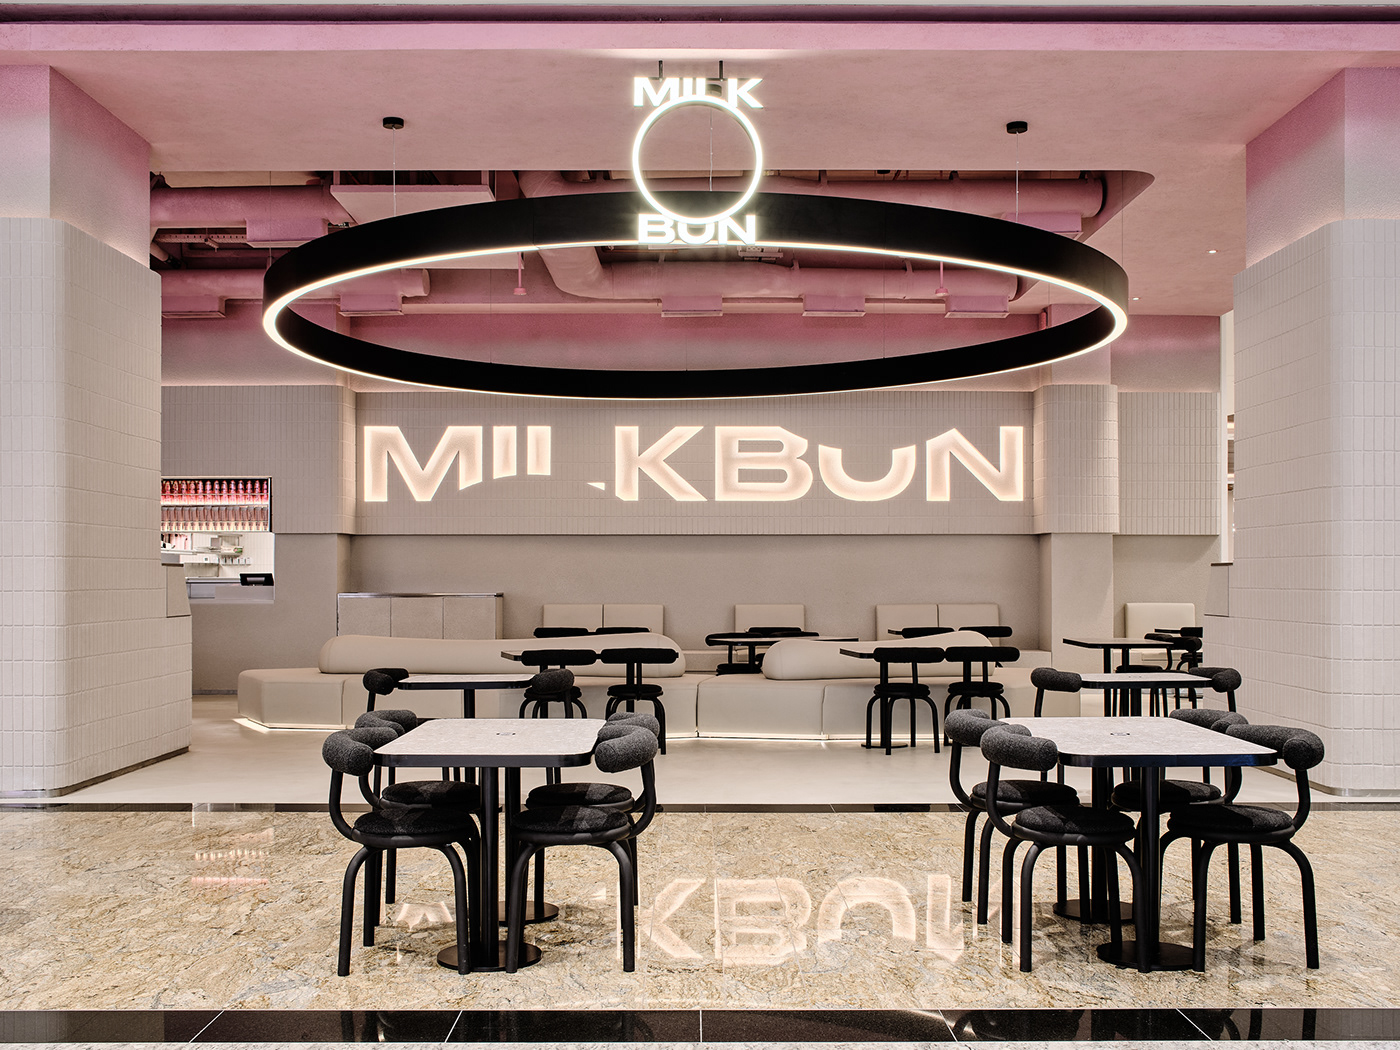 milk bun Muscat Oman gastronomica mohammad taqi ashkanani medium format FUJIFILM GFX 100 restaurant pink